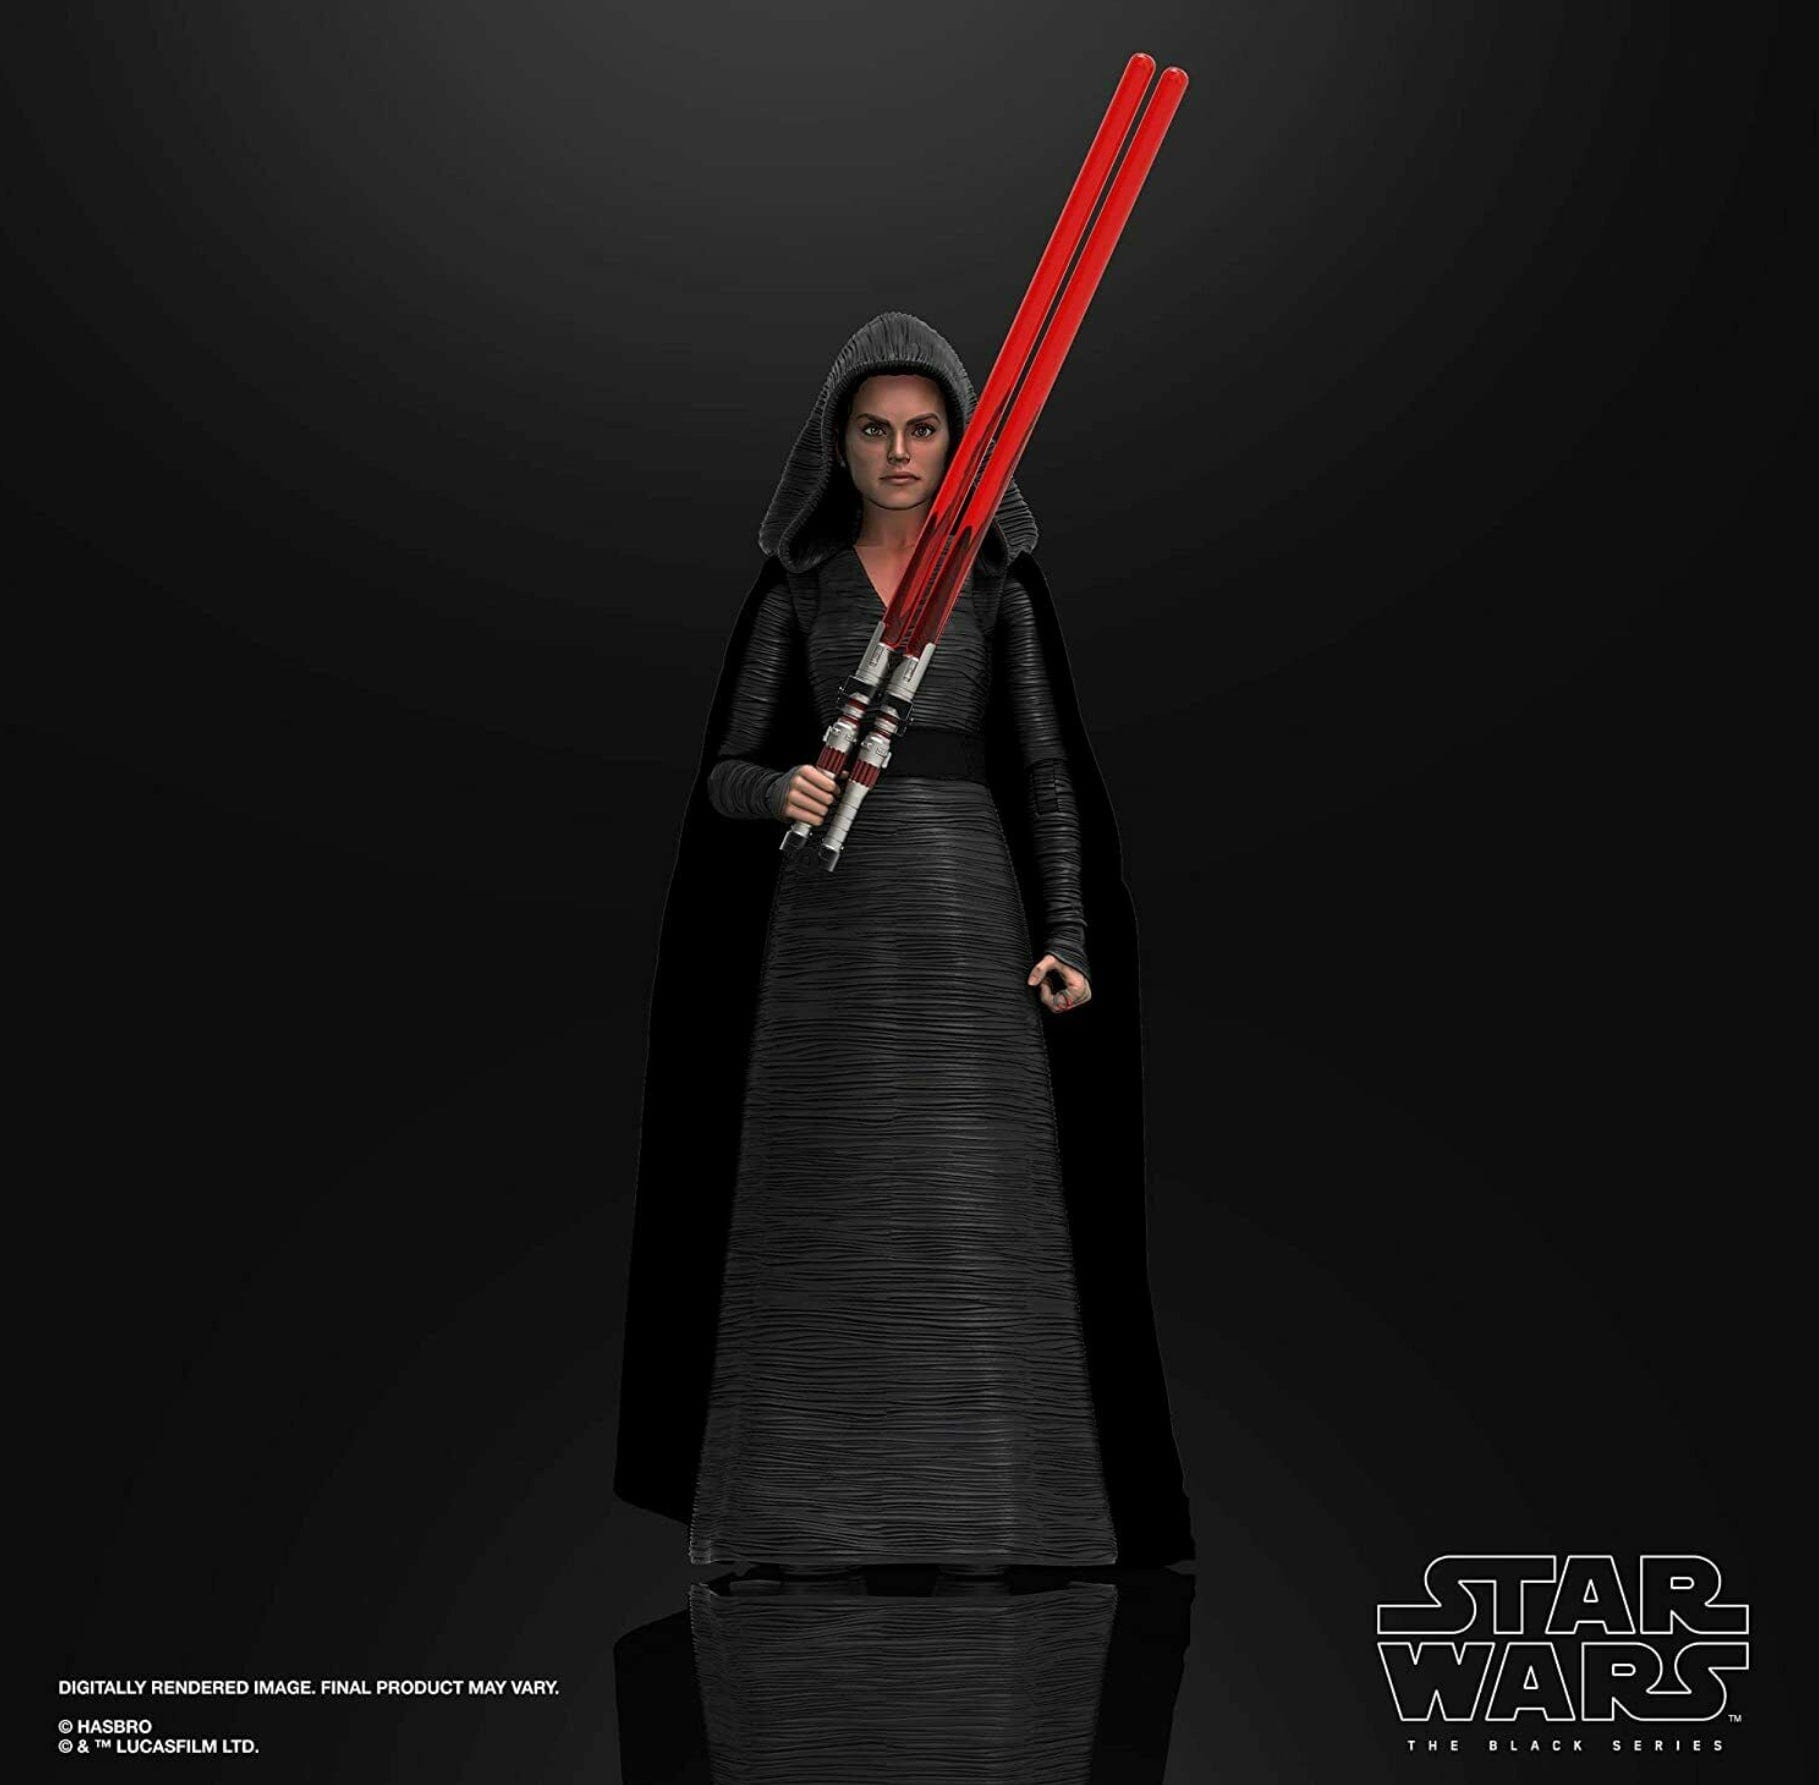 Star Wars The Black Series Rey Dark Side Vision Rise of Skywalker 6-Inch Figure